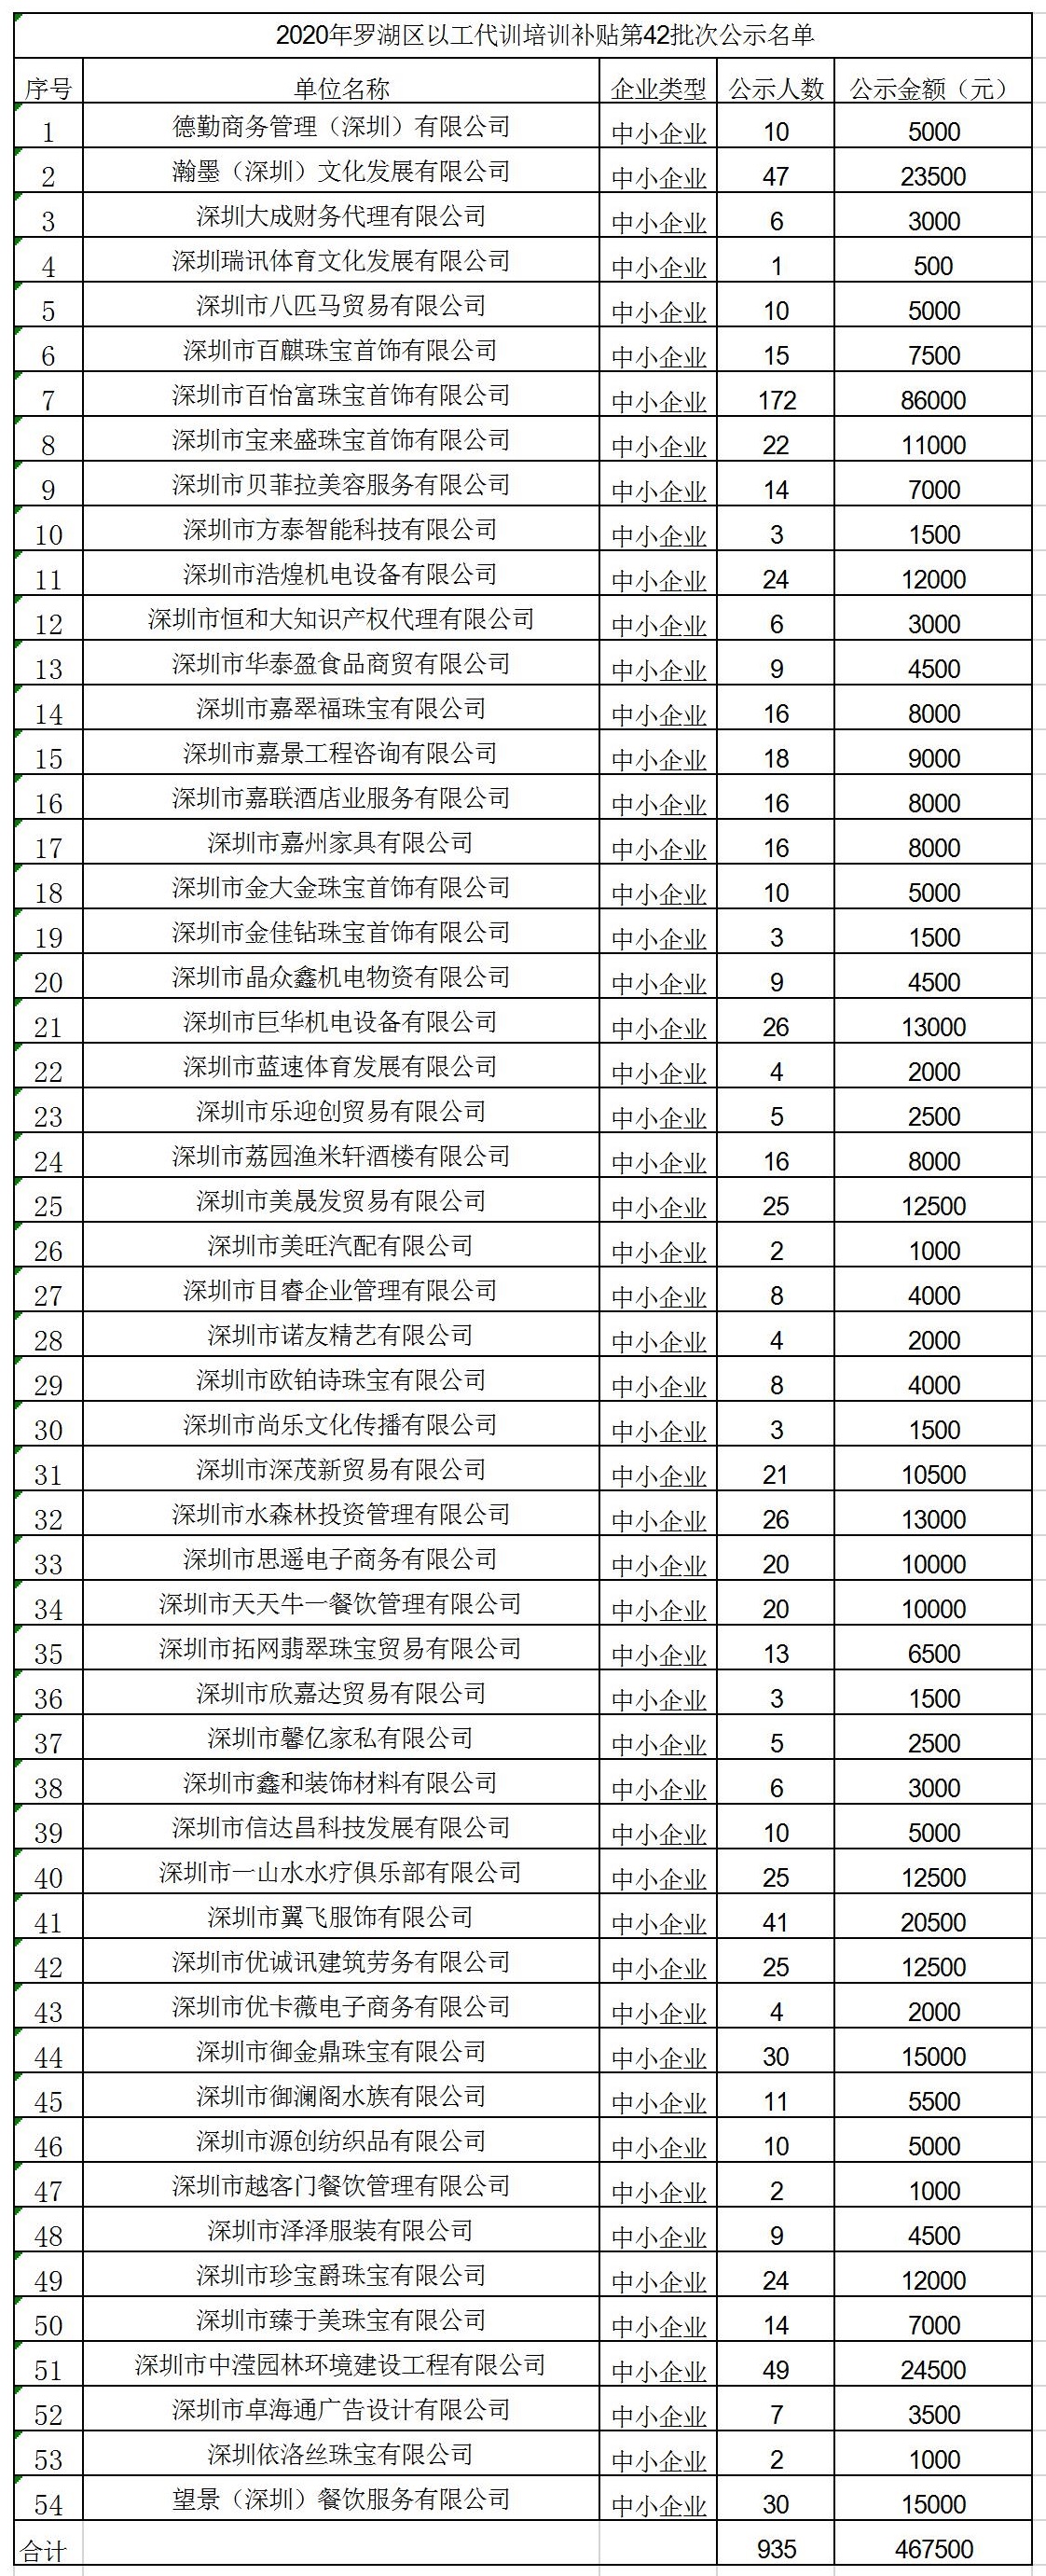 2020年深圳市罗湖区以工代训培训补贴第42批次公示名单.jpg